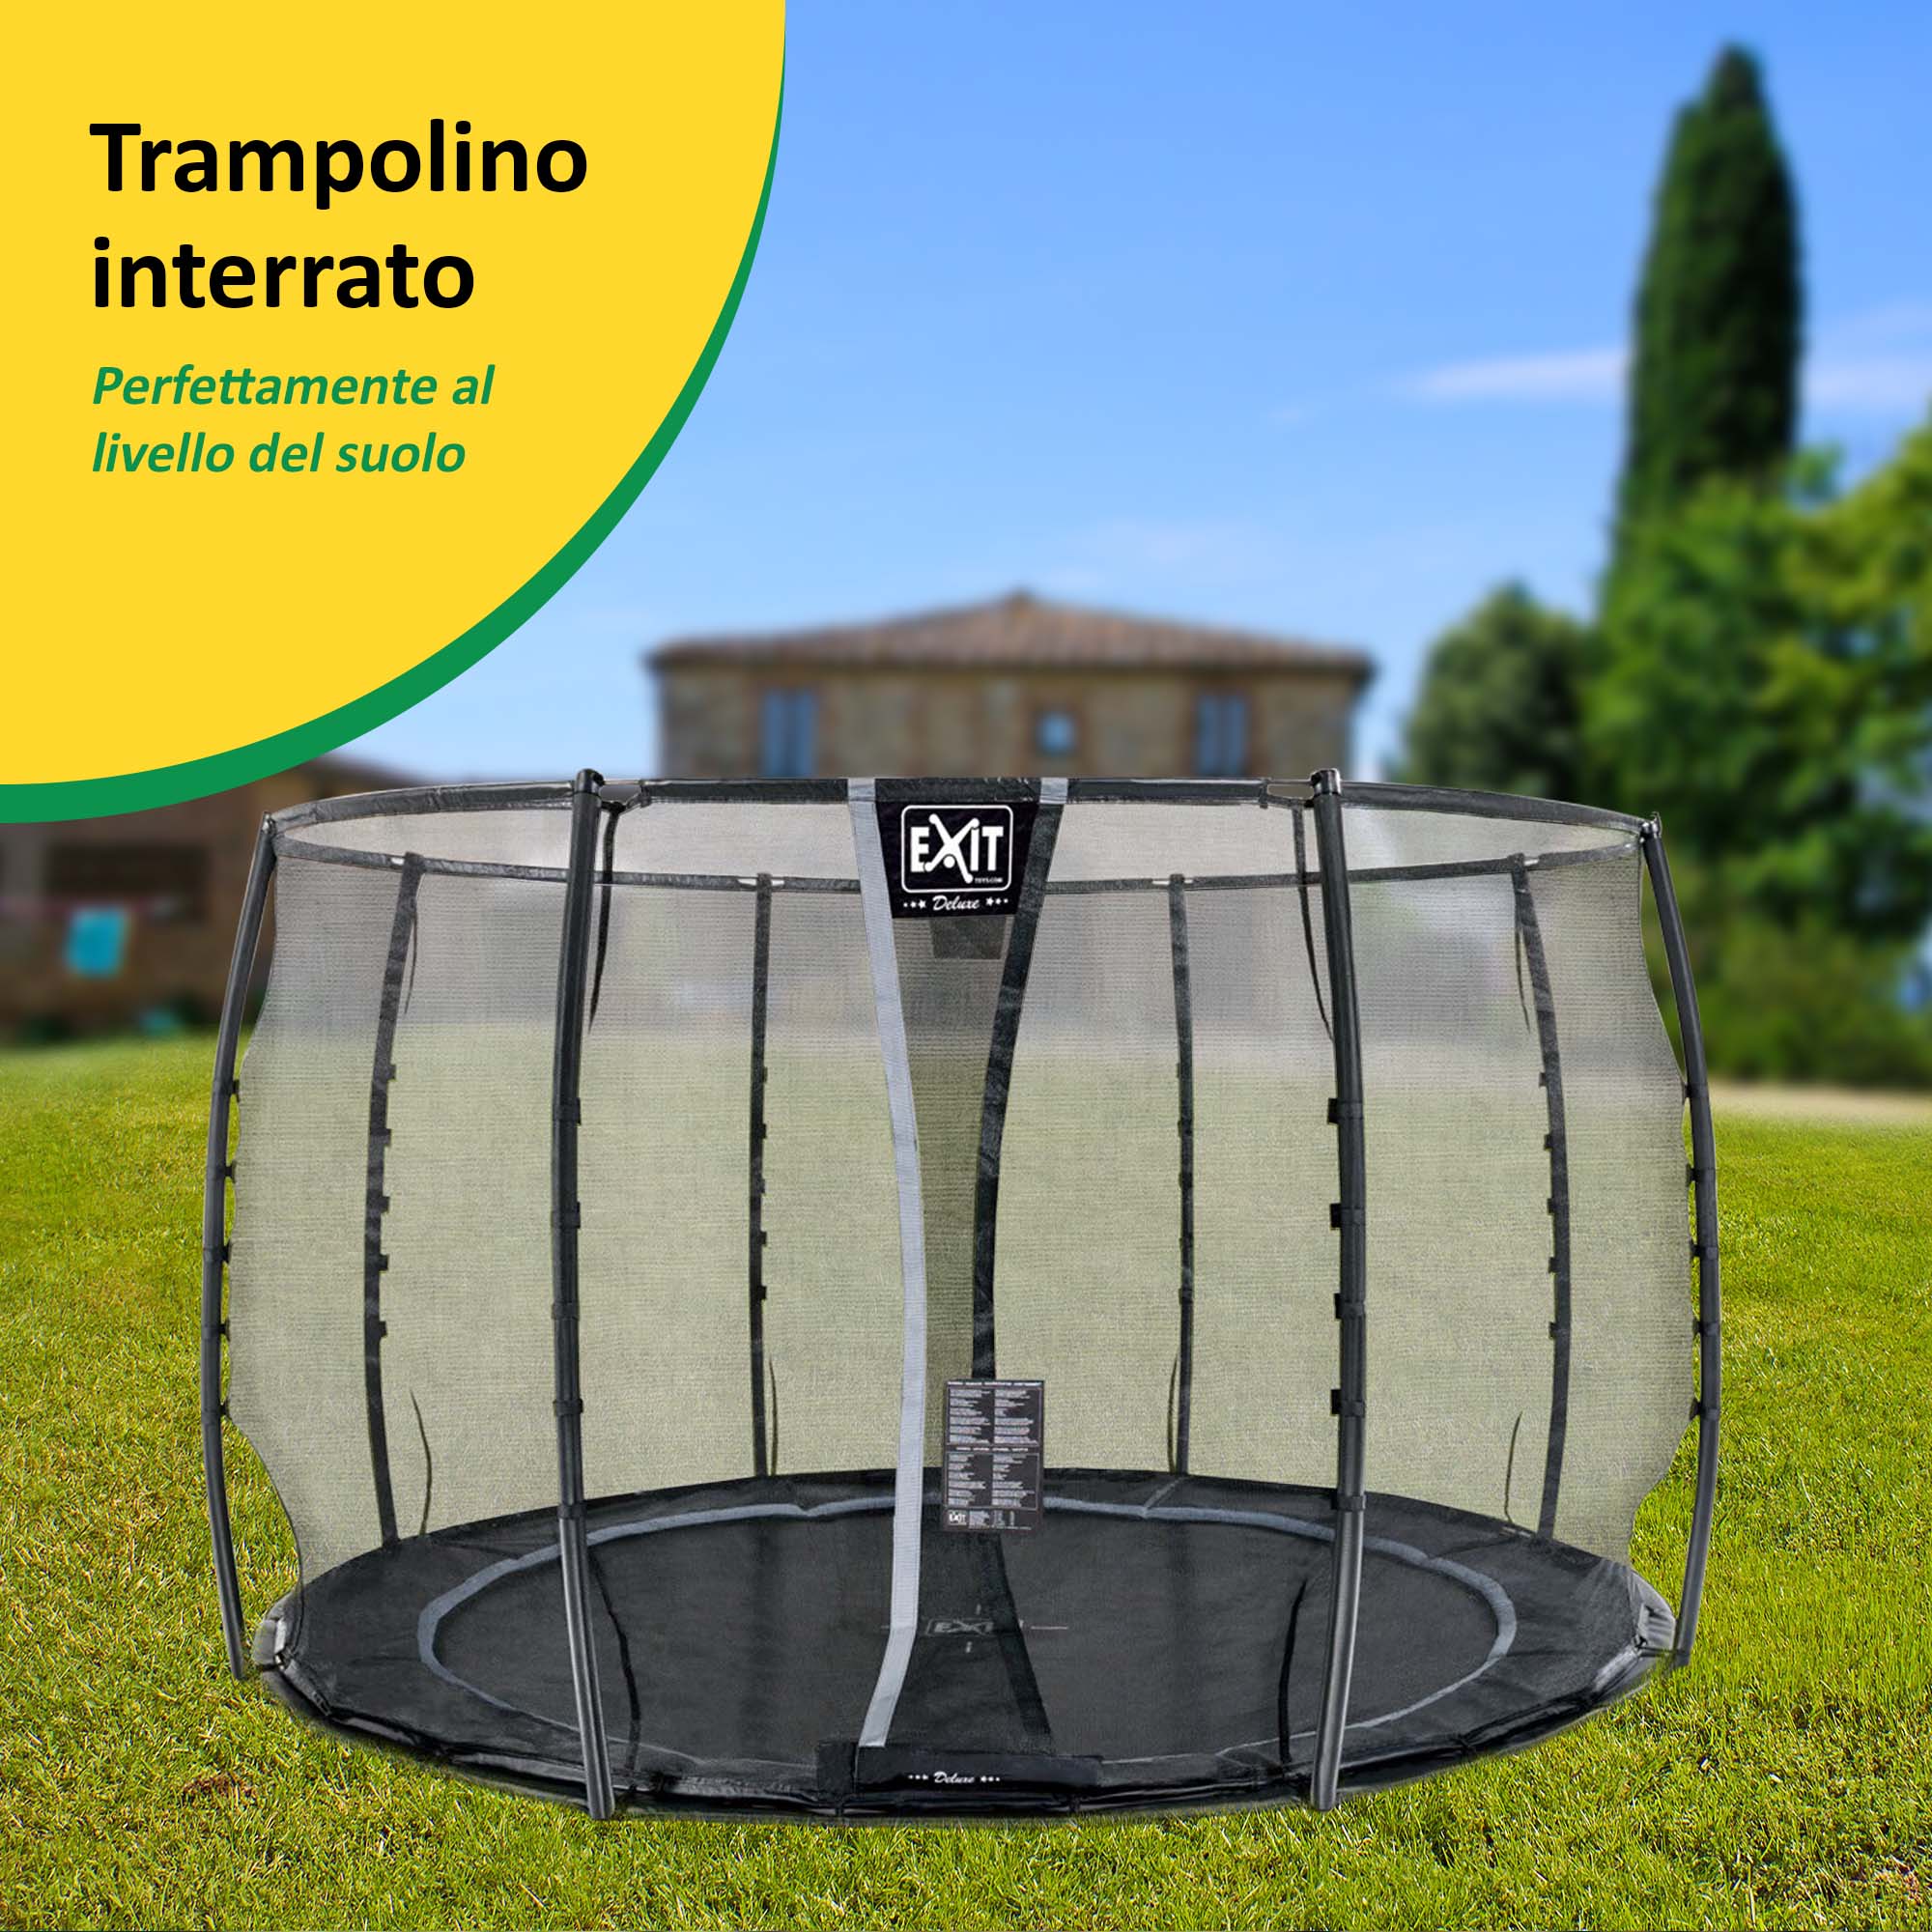 Solotrampolino.it trampolino elastico interrato